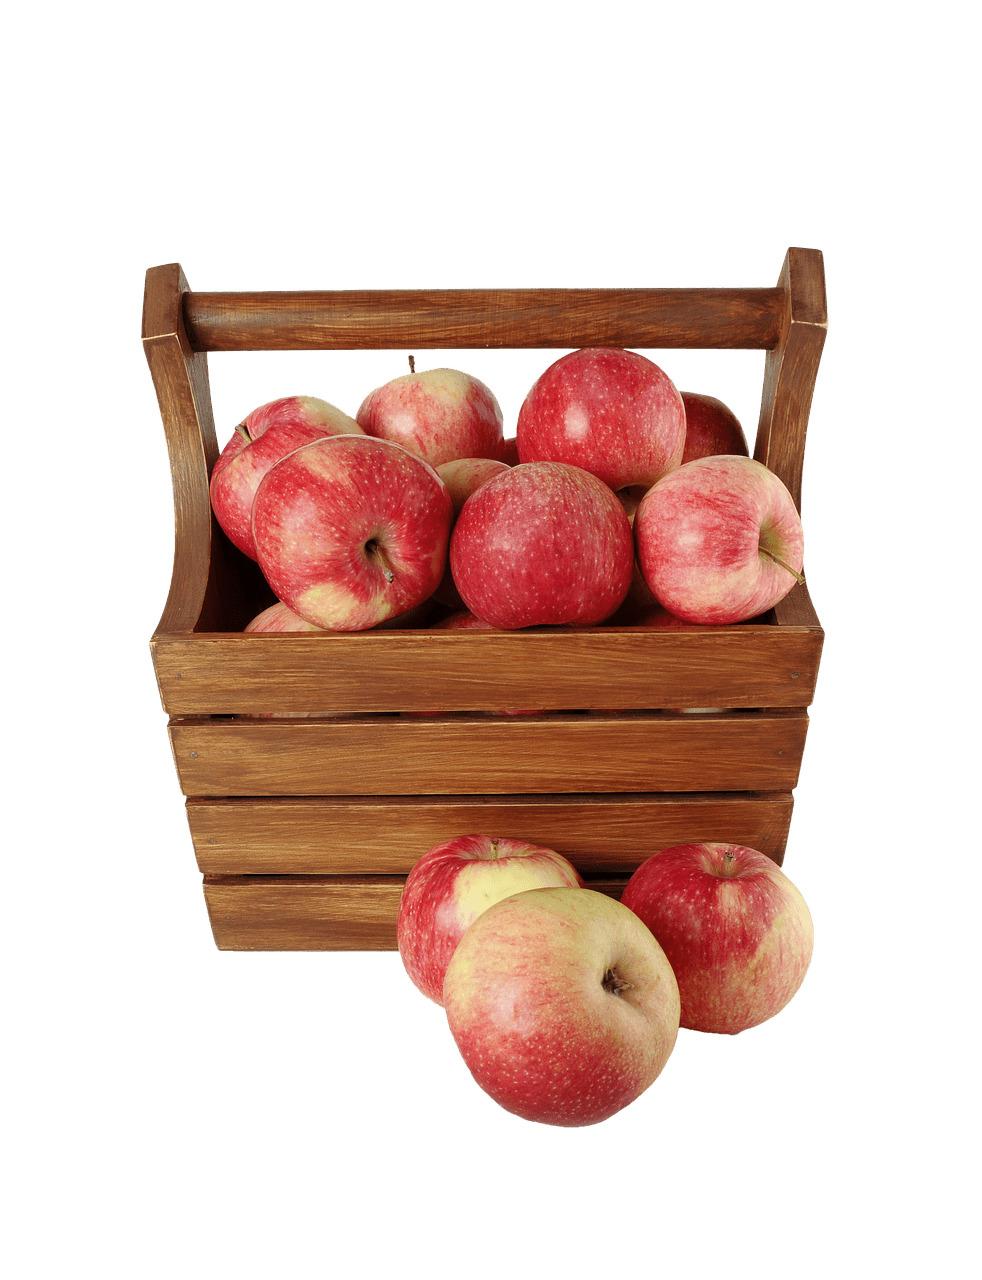 Appels In Wooden Case png transparent